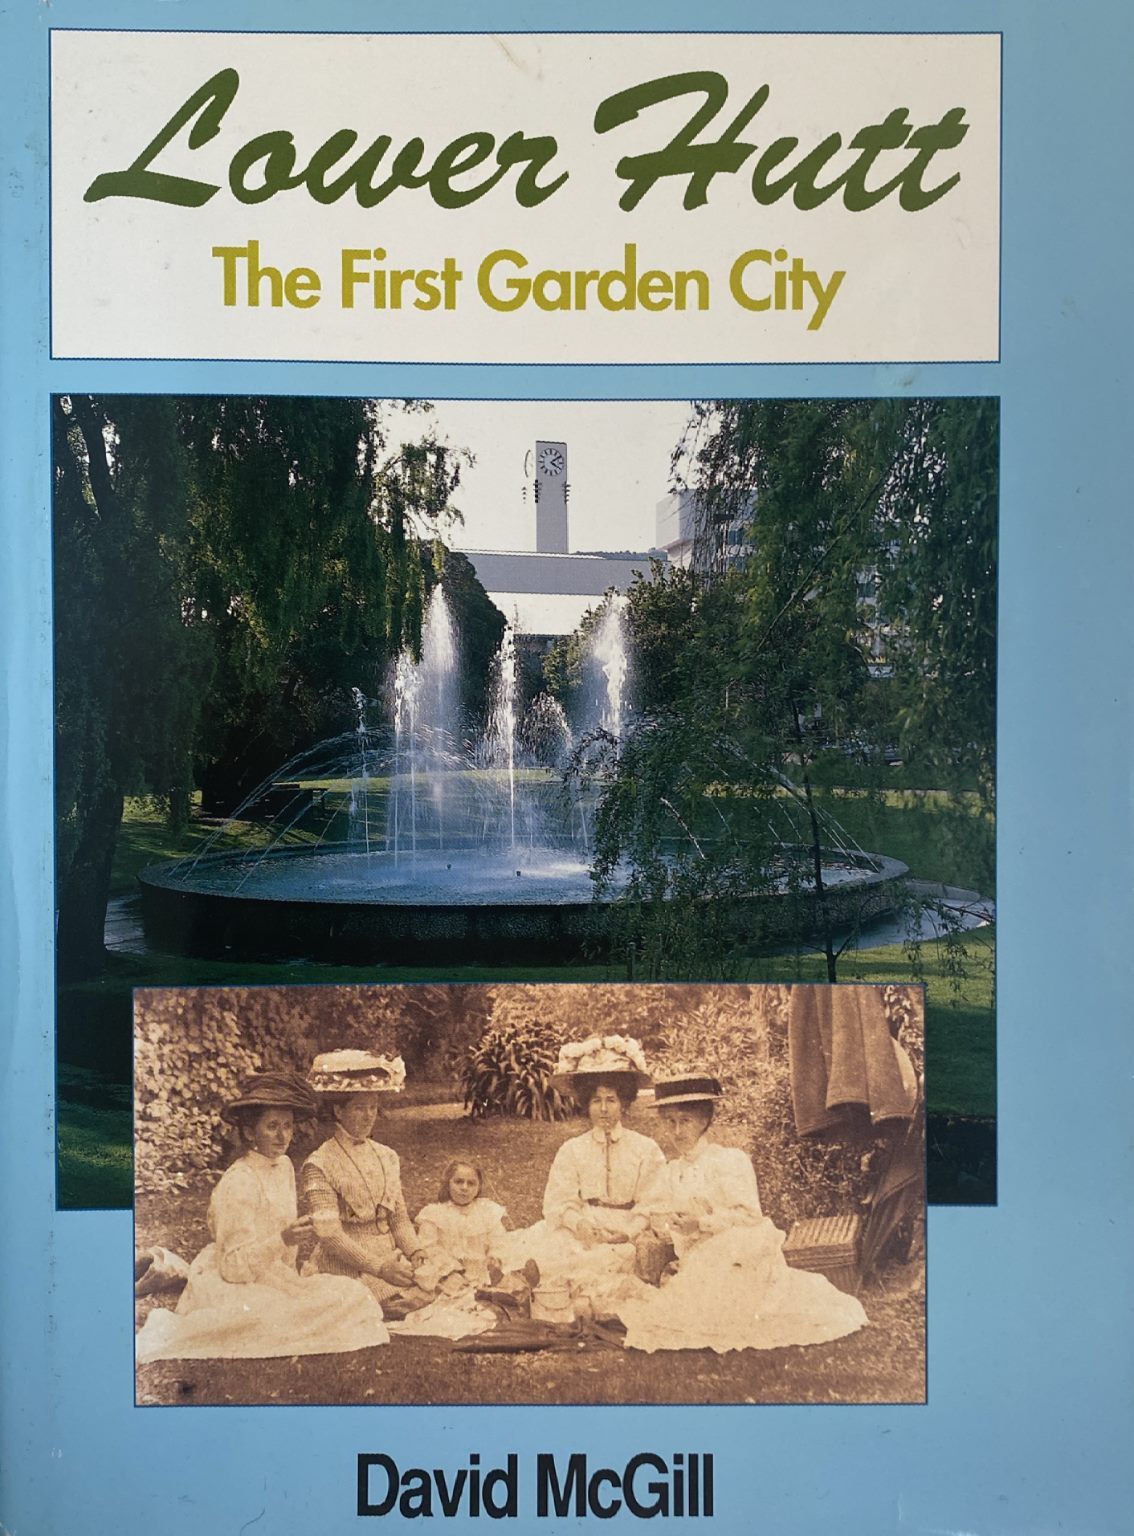 LOWER HUTT: The First Garden City